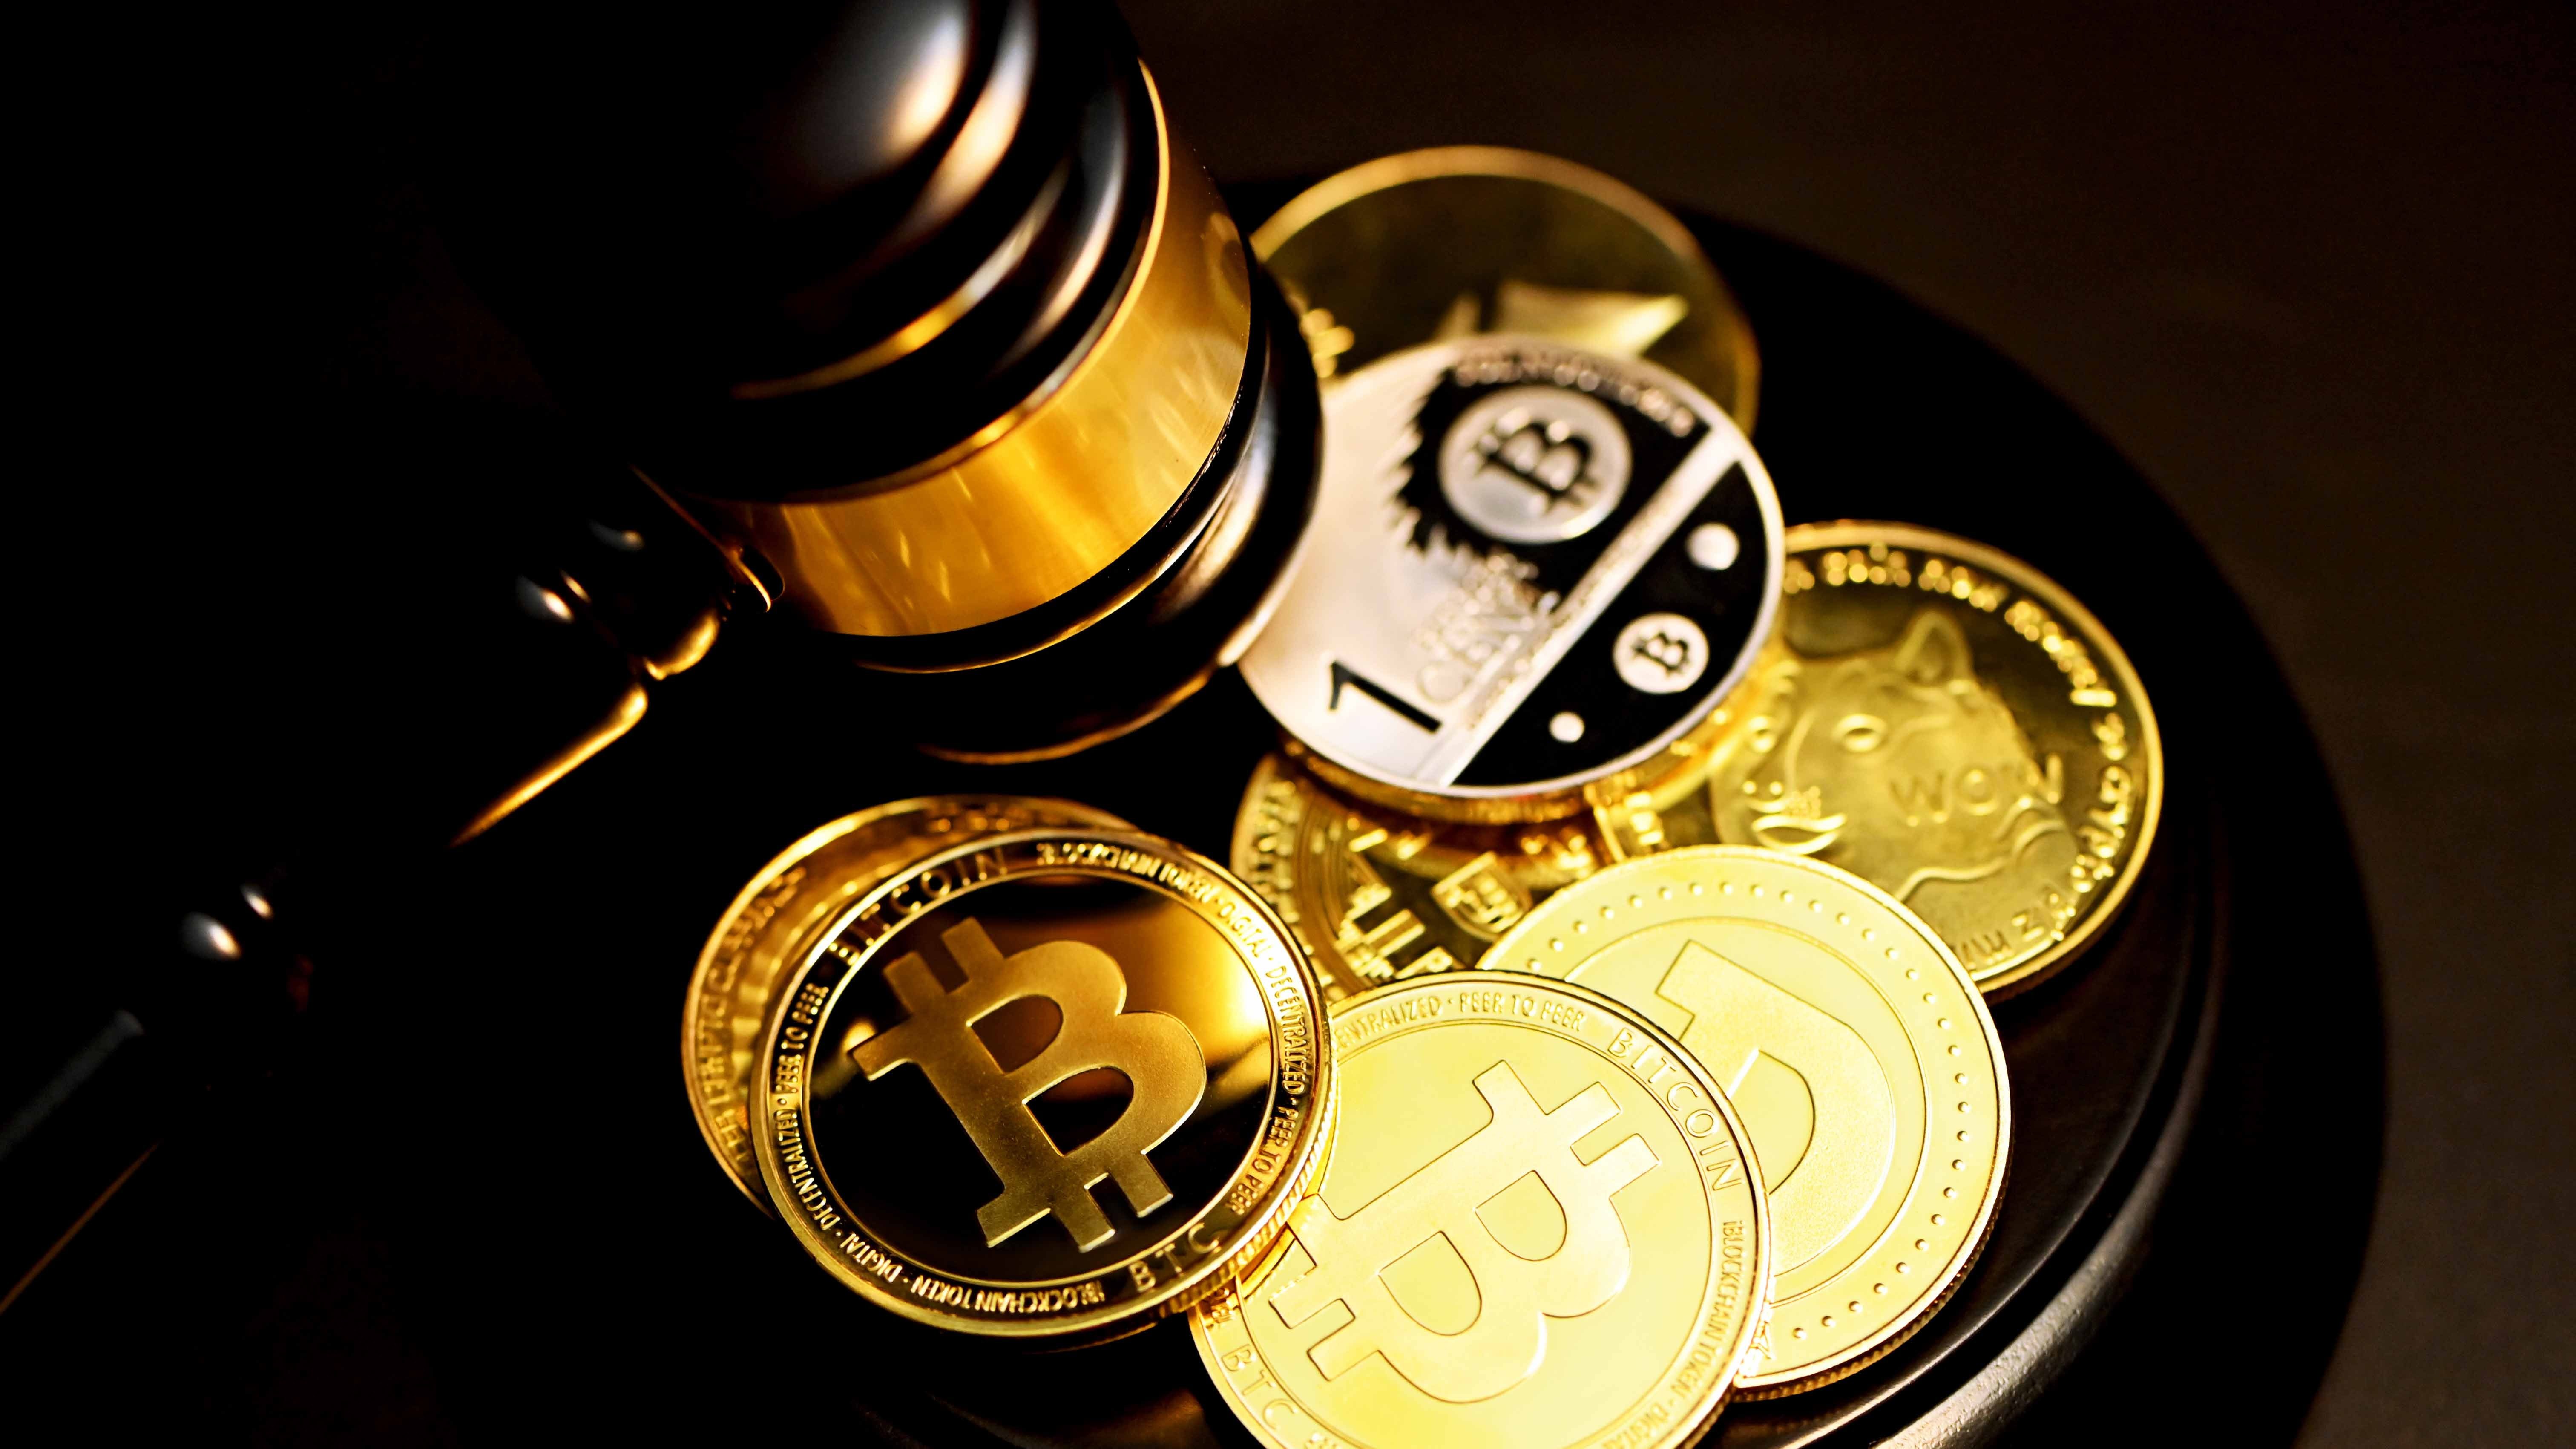 Suécia é obrigada a devolver US$ 1,6 milhão em bitcoin a traficante | Finanças